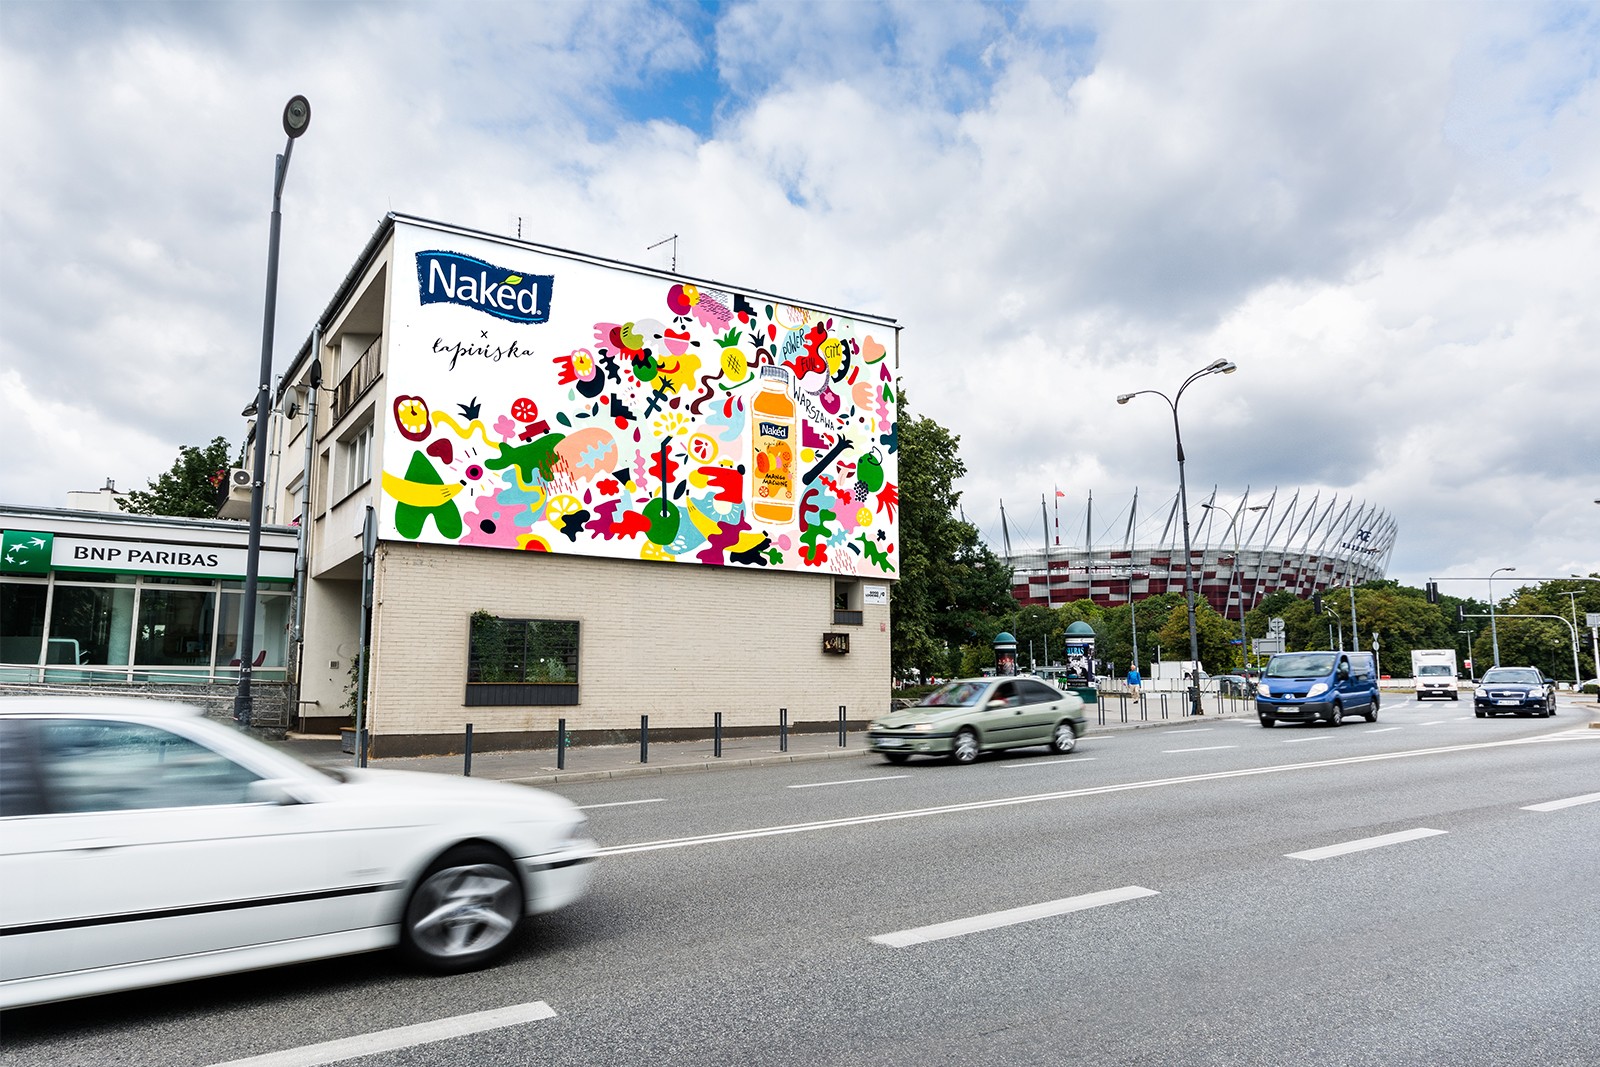 Mural reklamowy Naked ul. Francuska 49 w Warszawie | #PowerFullCity | Portfolio